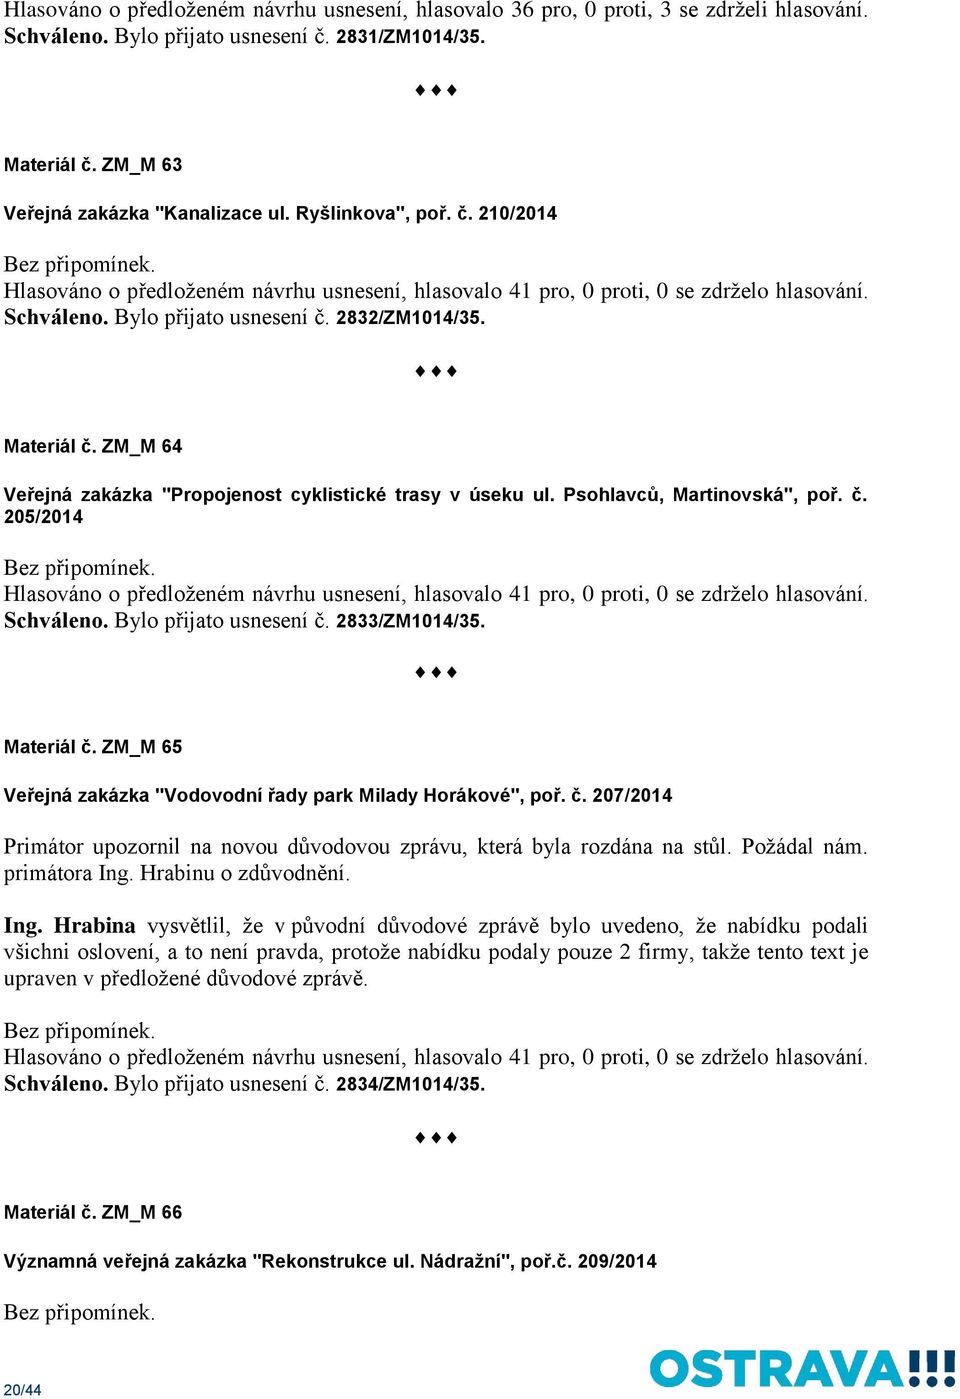 ZM_M 64 Veřejná zakázka "Propojenost cyklistické trasy v úseku ul. Psohlavců, Martinovská", poř. č. 205/2014 Hlasováno o předloženém návrhu usnesení, hlasovalo 41 pro, 0 proti, 0 se zdrželo hlasování.